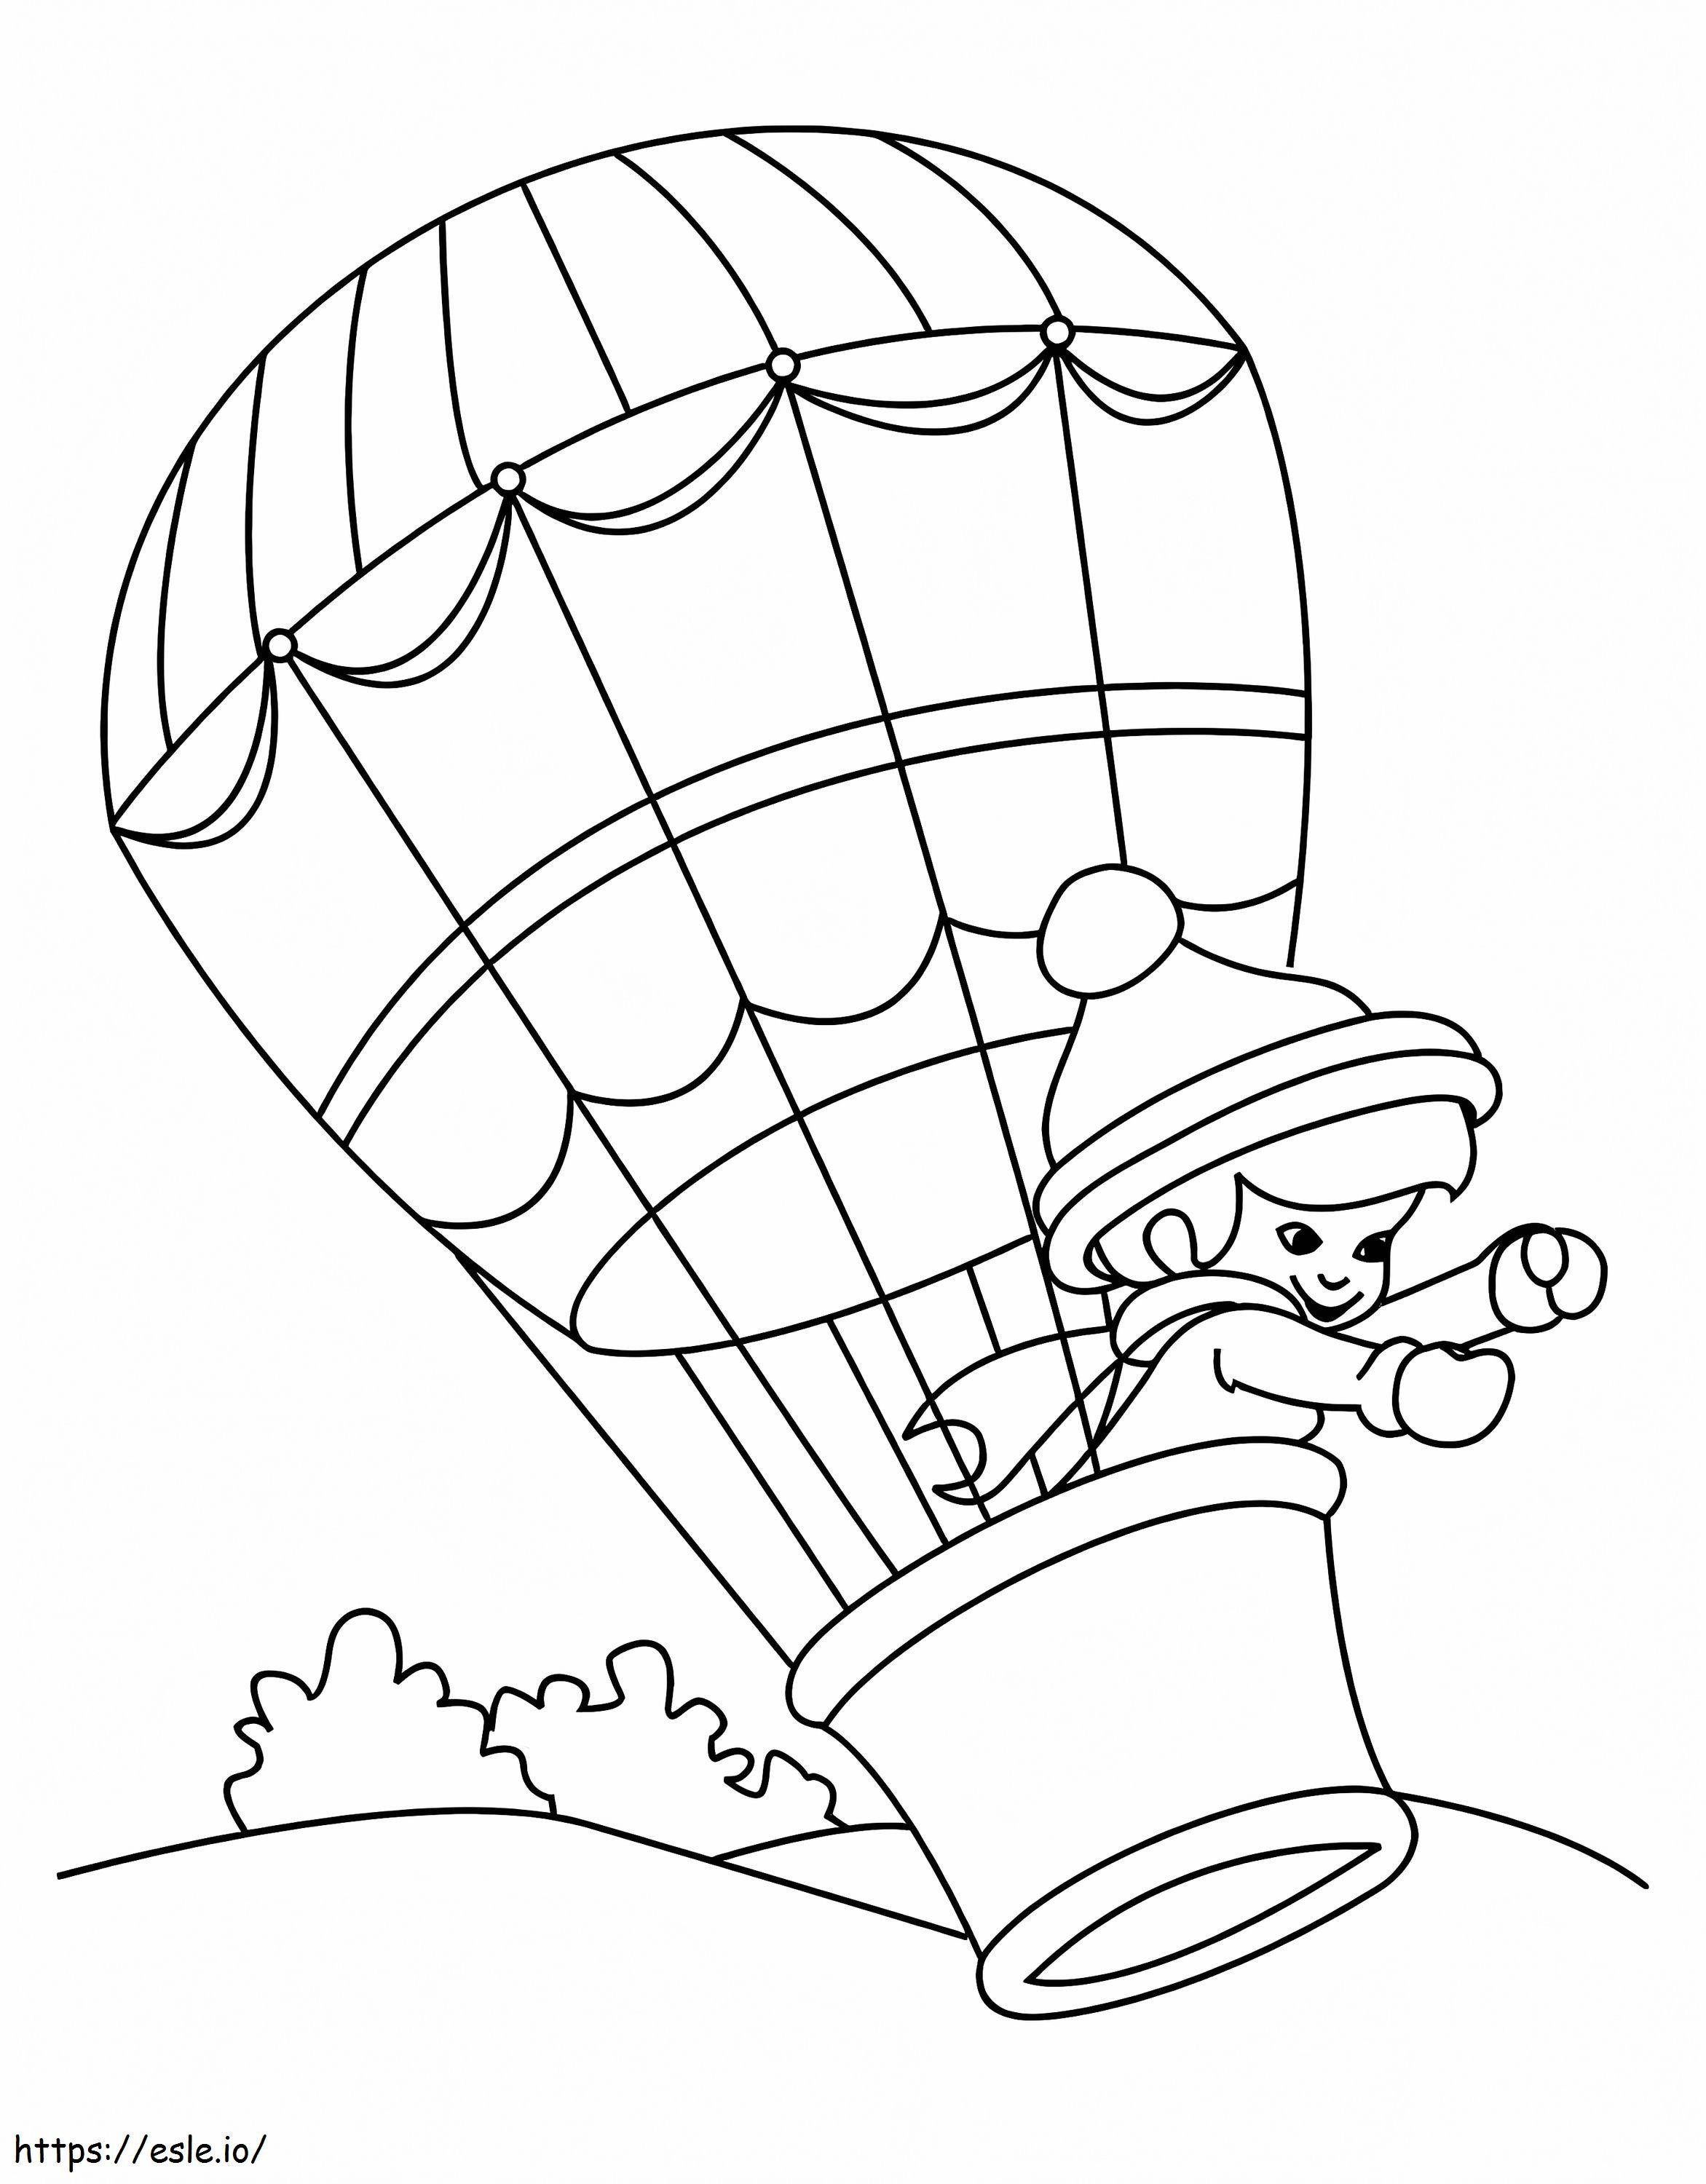 Zwykły balon na ogrzane powietrze 3 kolorowanka